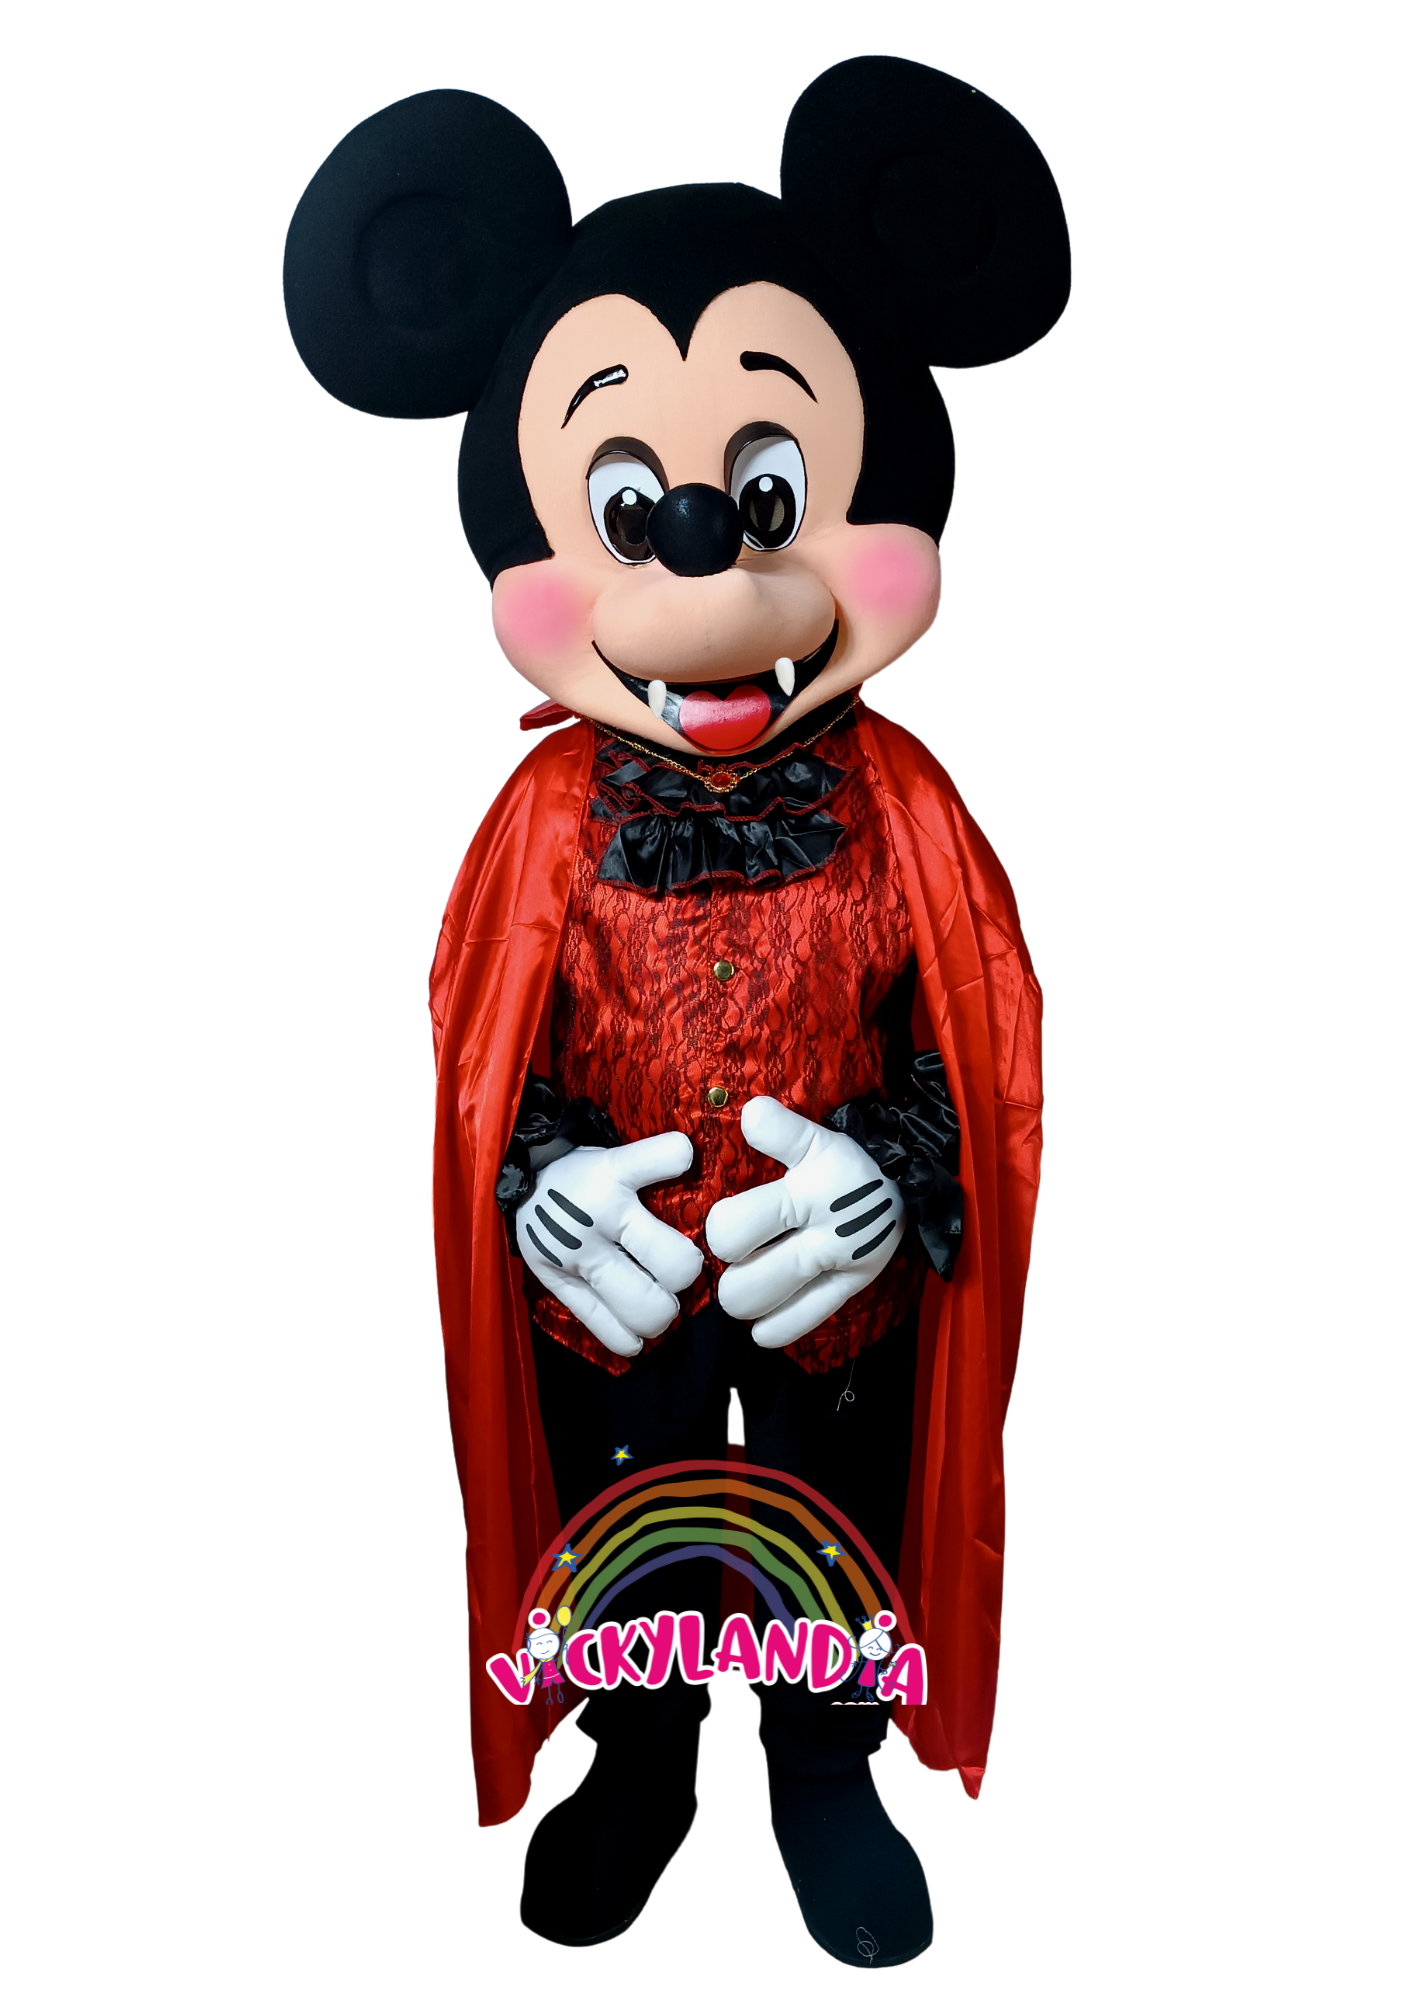 Descubre la magia de nuestro muñeco publicitario de Ratón Drácula en Vickylandia. Son disfraces cabezones perfectos para fiestas infantiles, shows, cumpleaños, estrategias publicitarias, espectáculos, cabalgatas y cualquier tipo de evento.